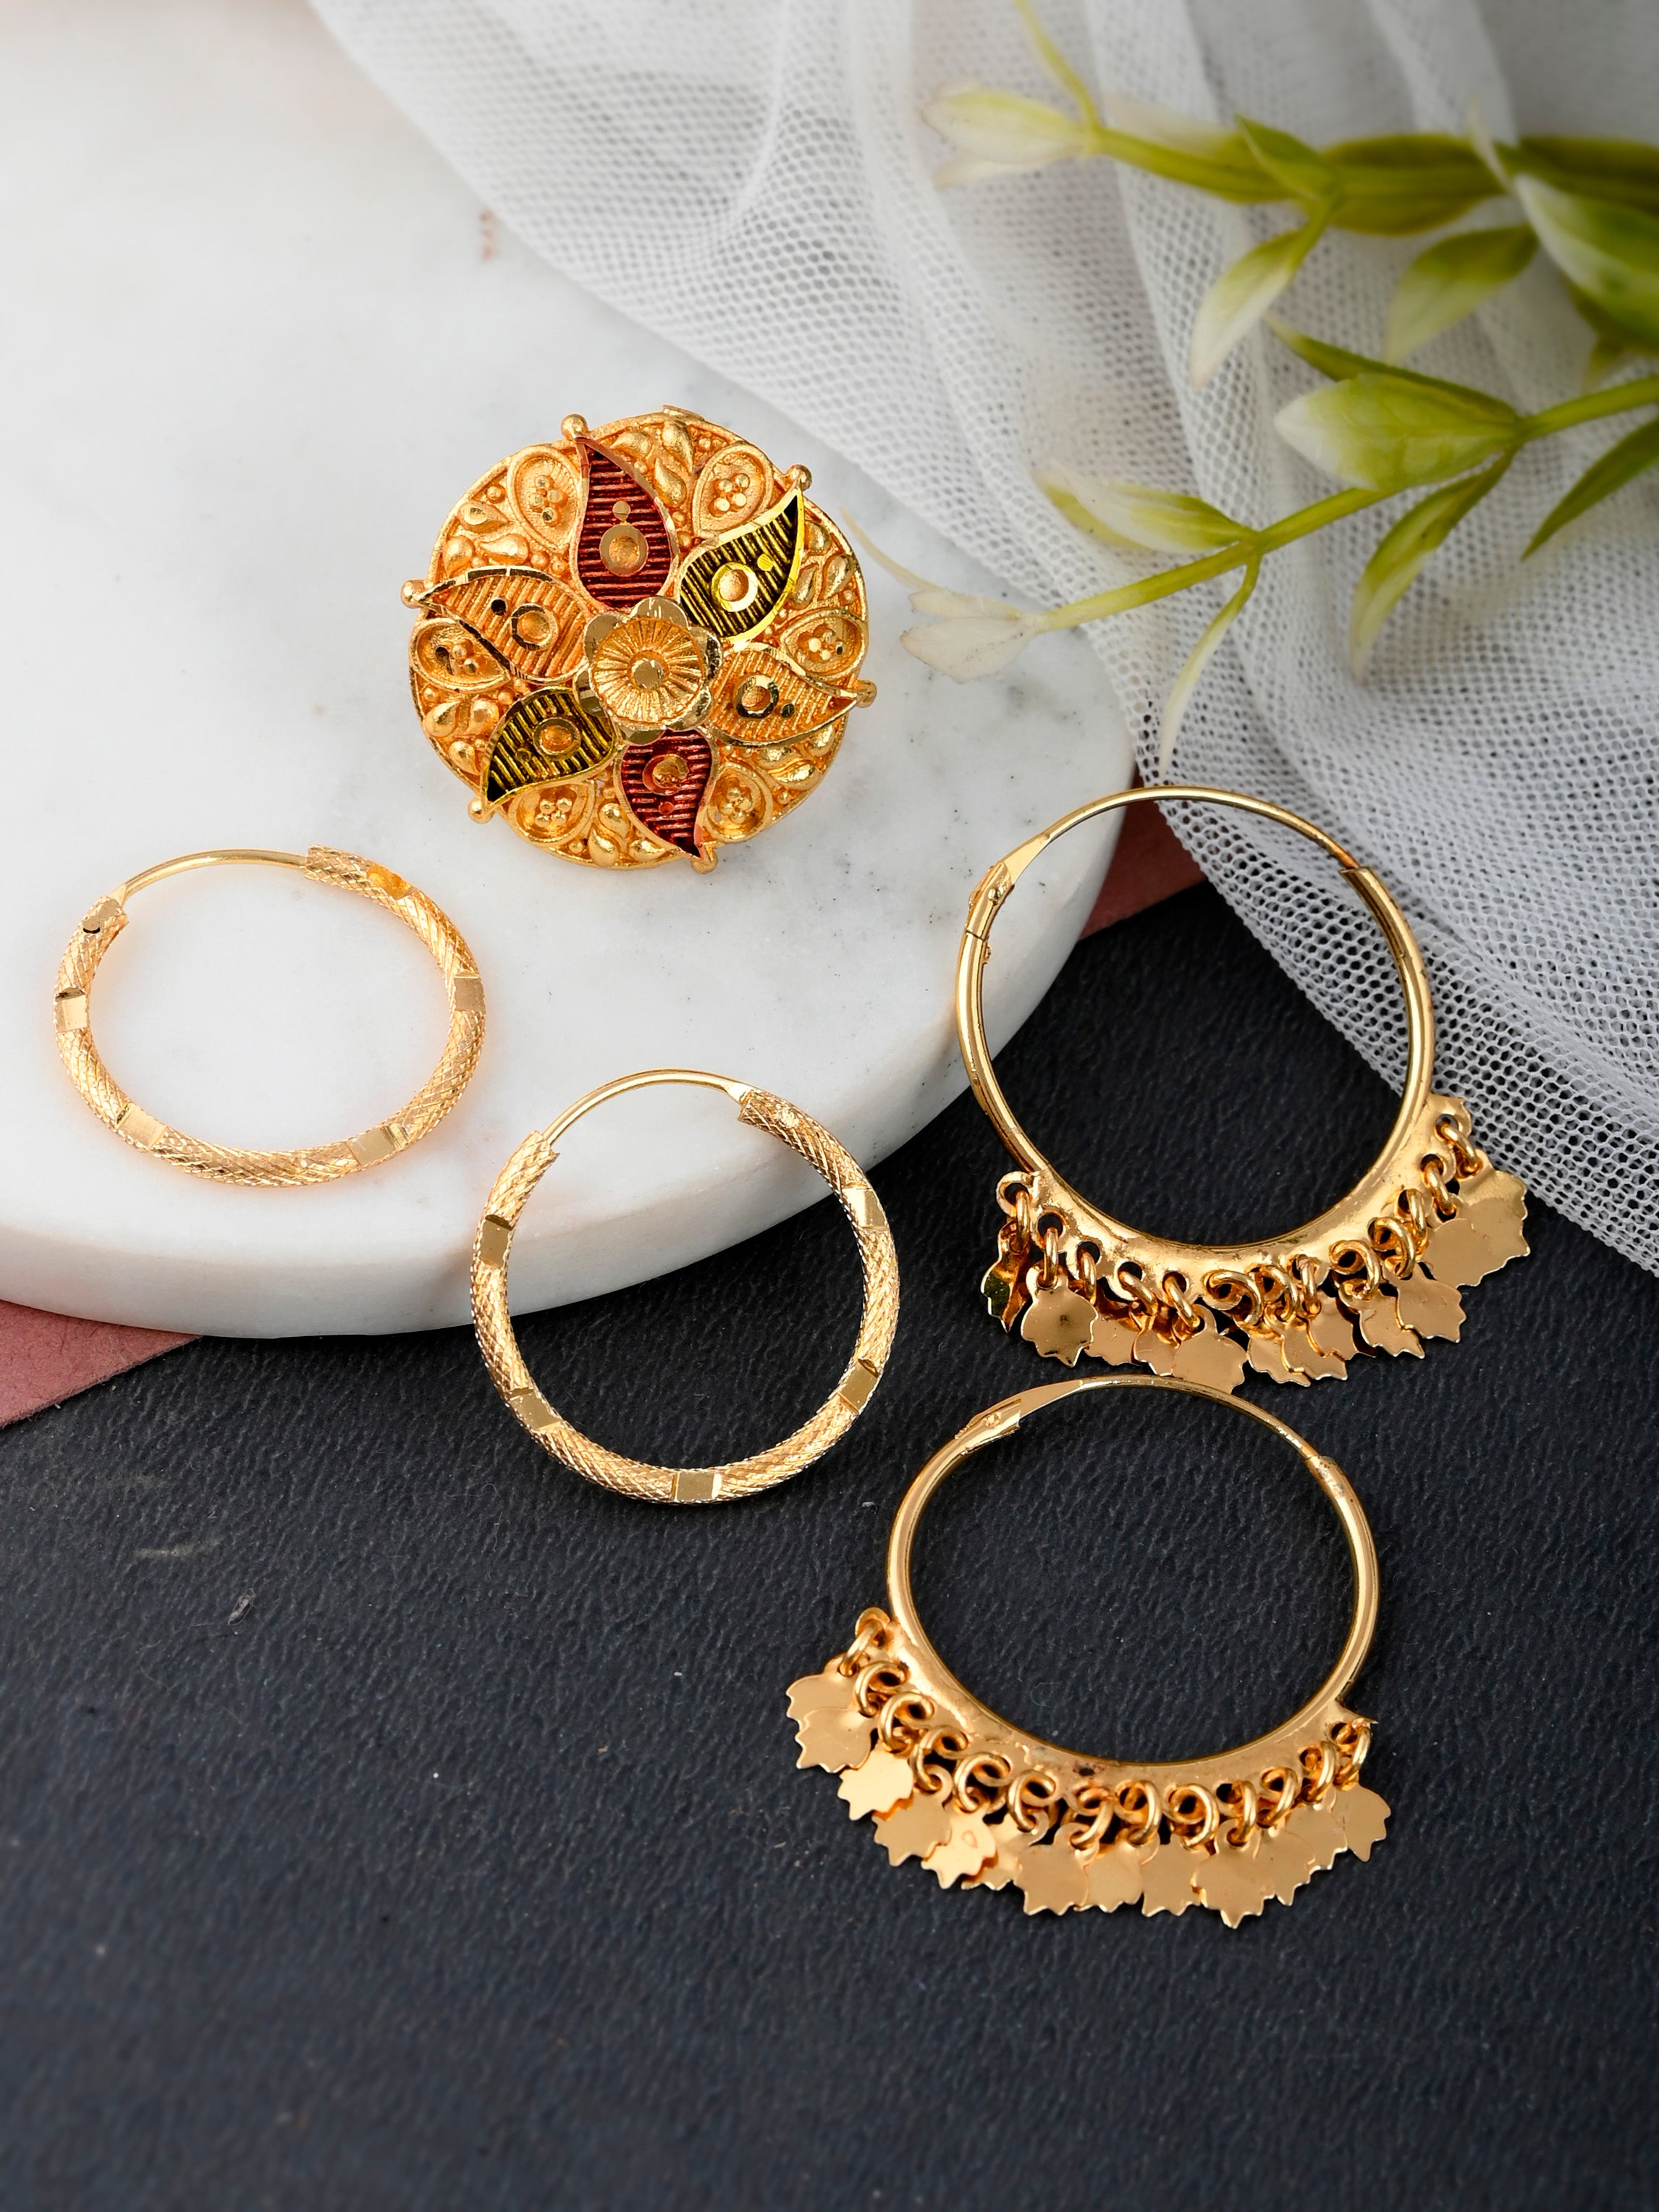 Alex Square Hoop Earrings in Gold – Sela Designs